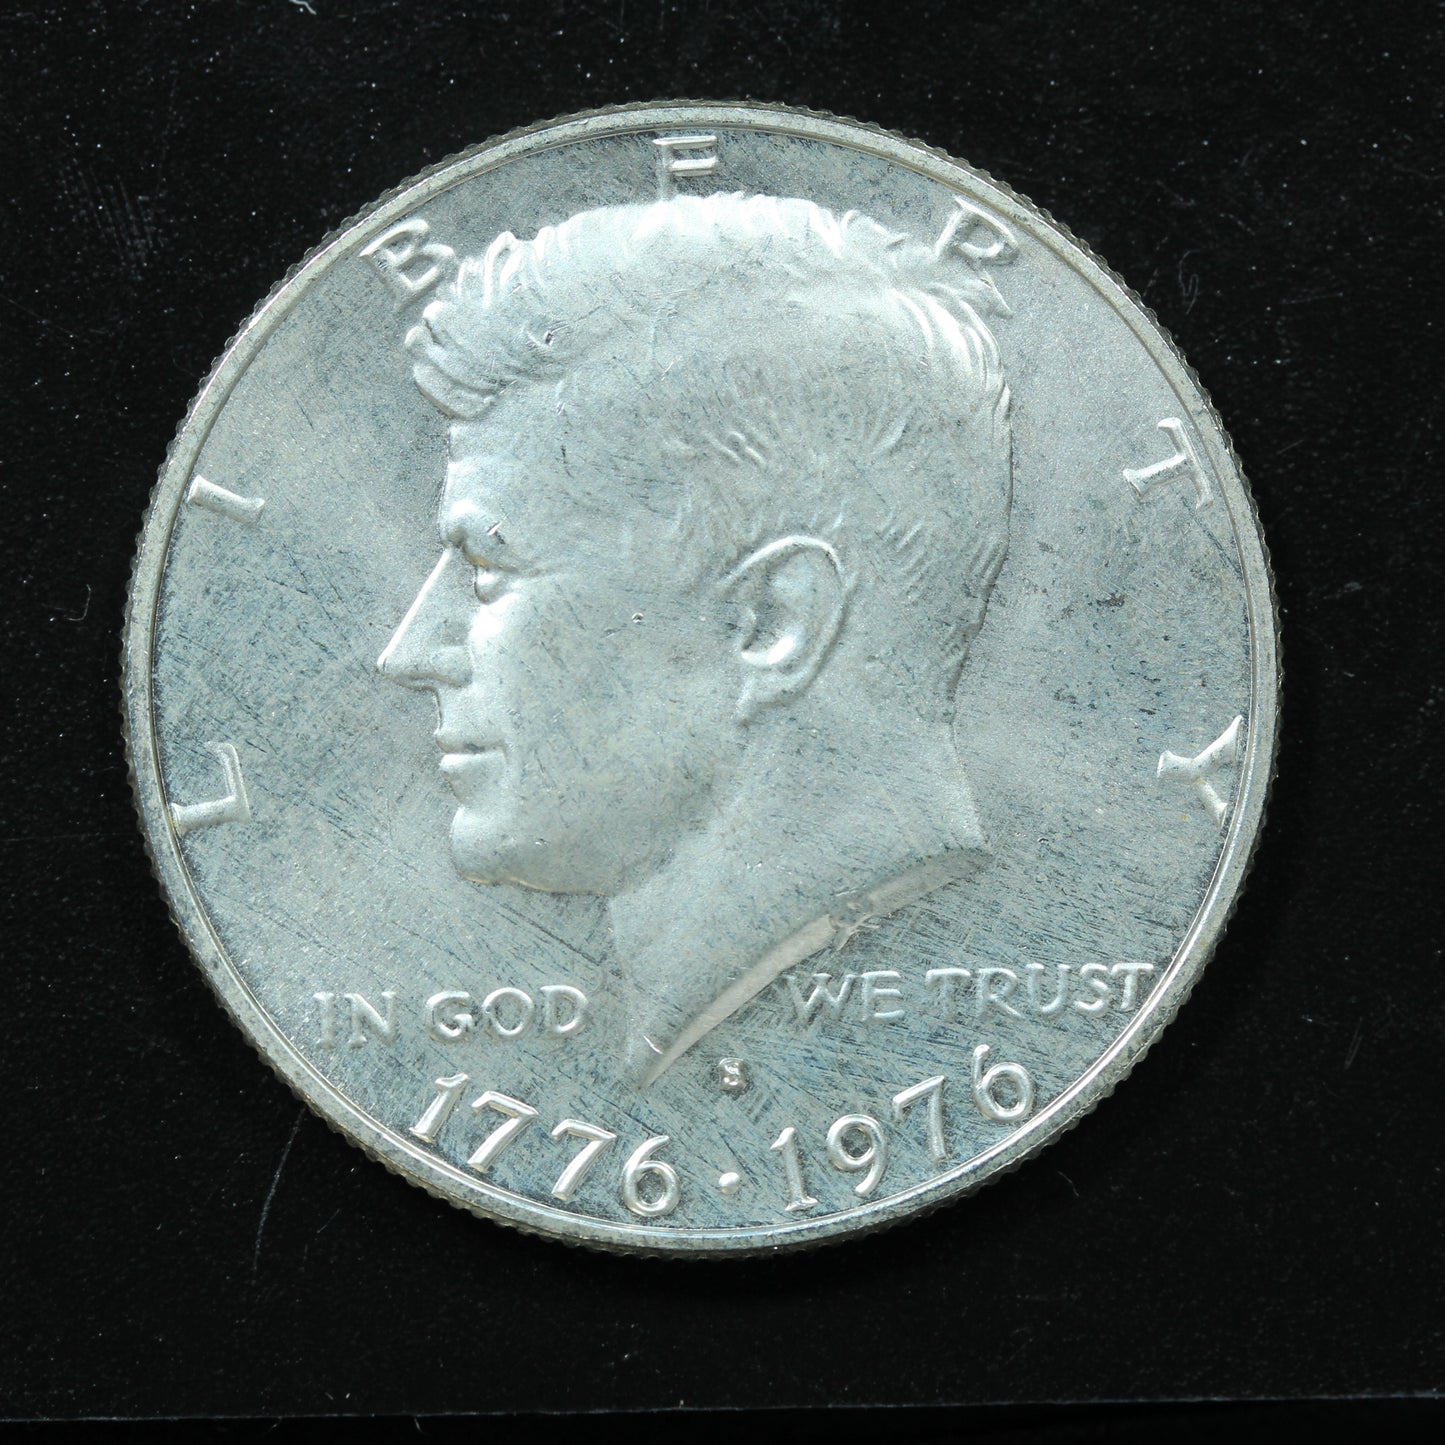 1776-1976 S (San Francisco) Kennedy Half Dollar 40% Silver